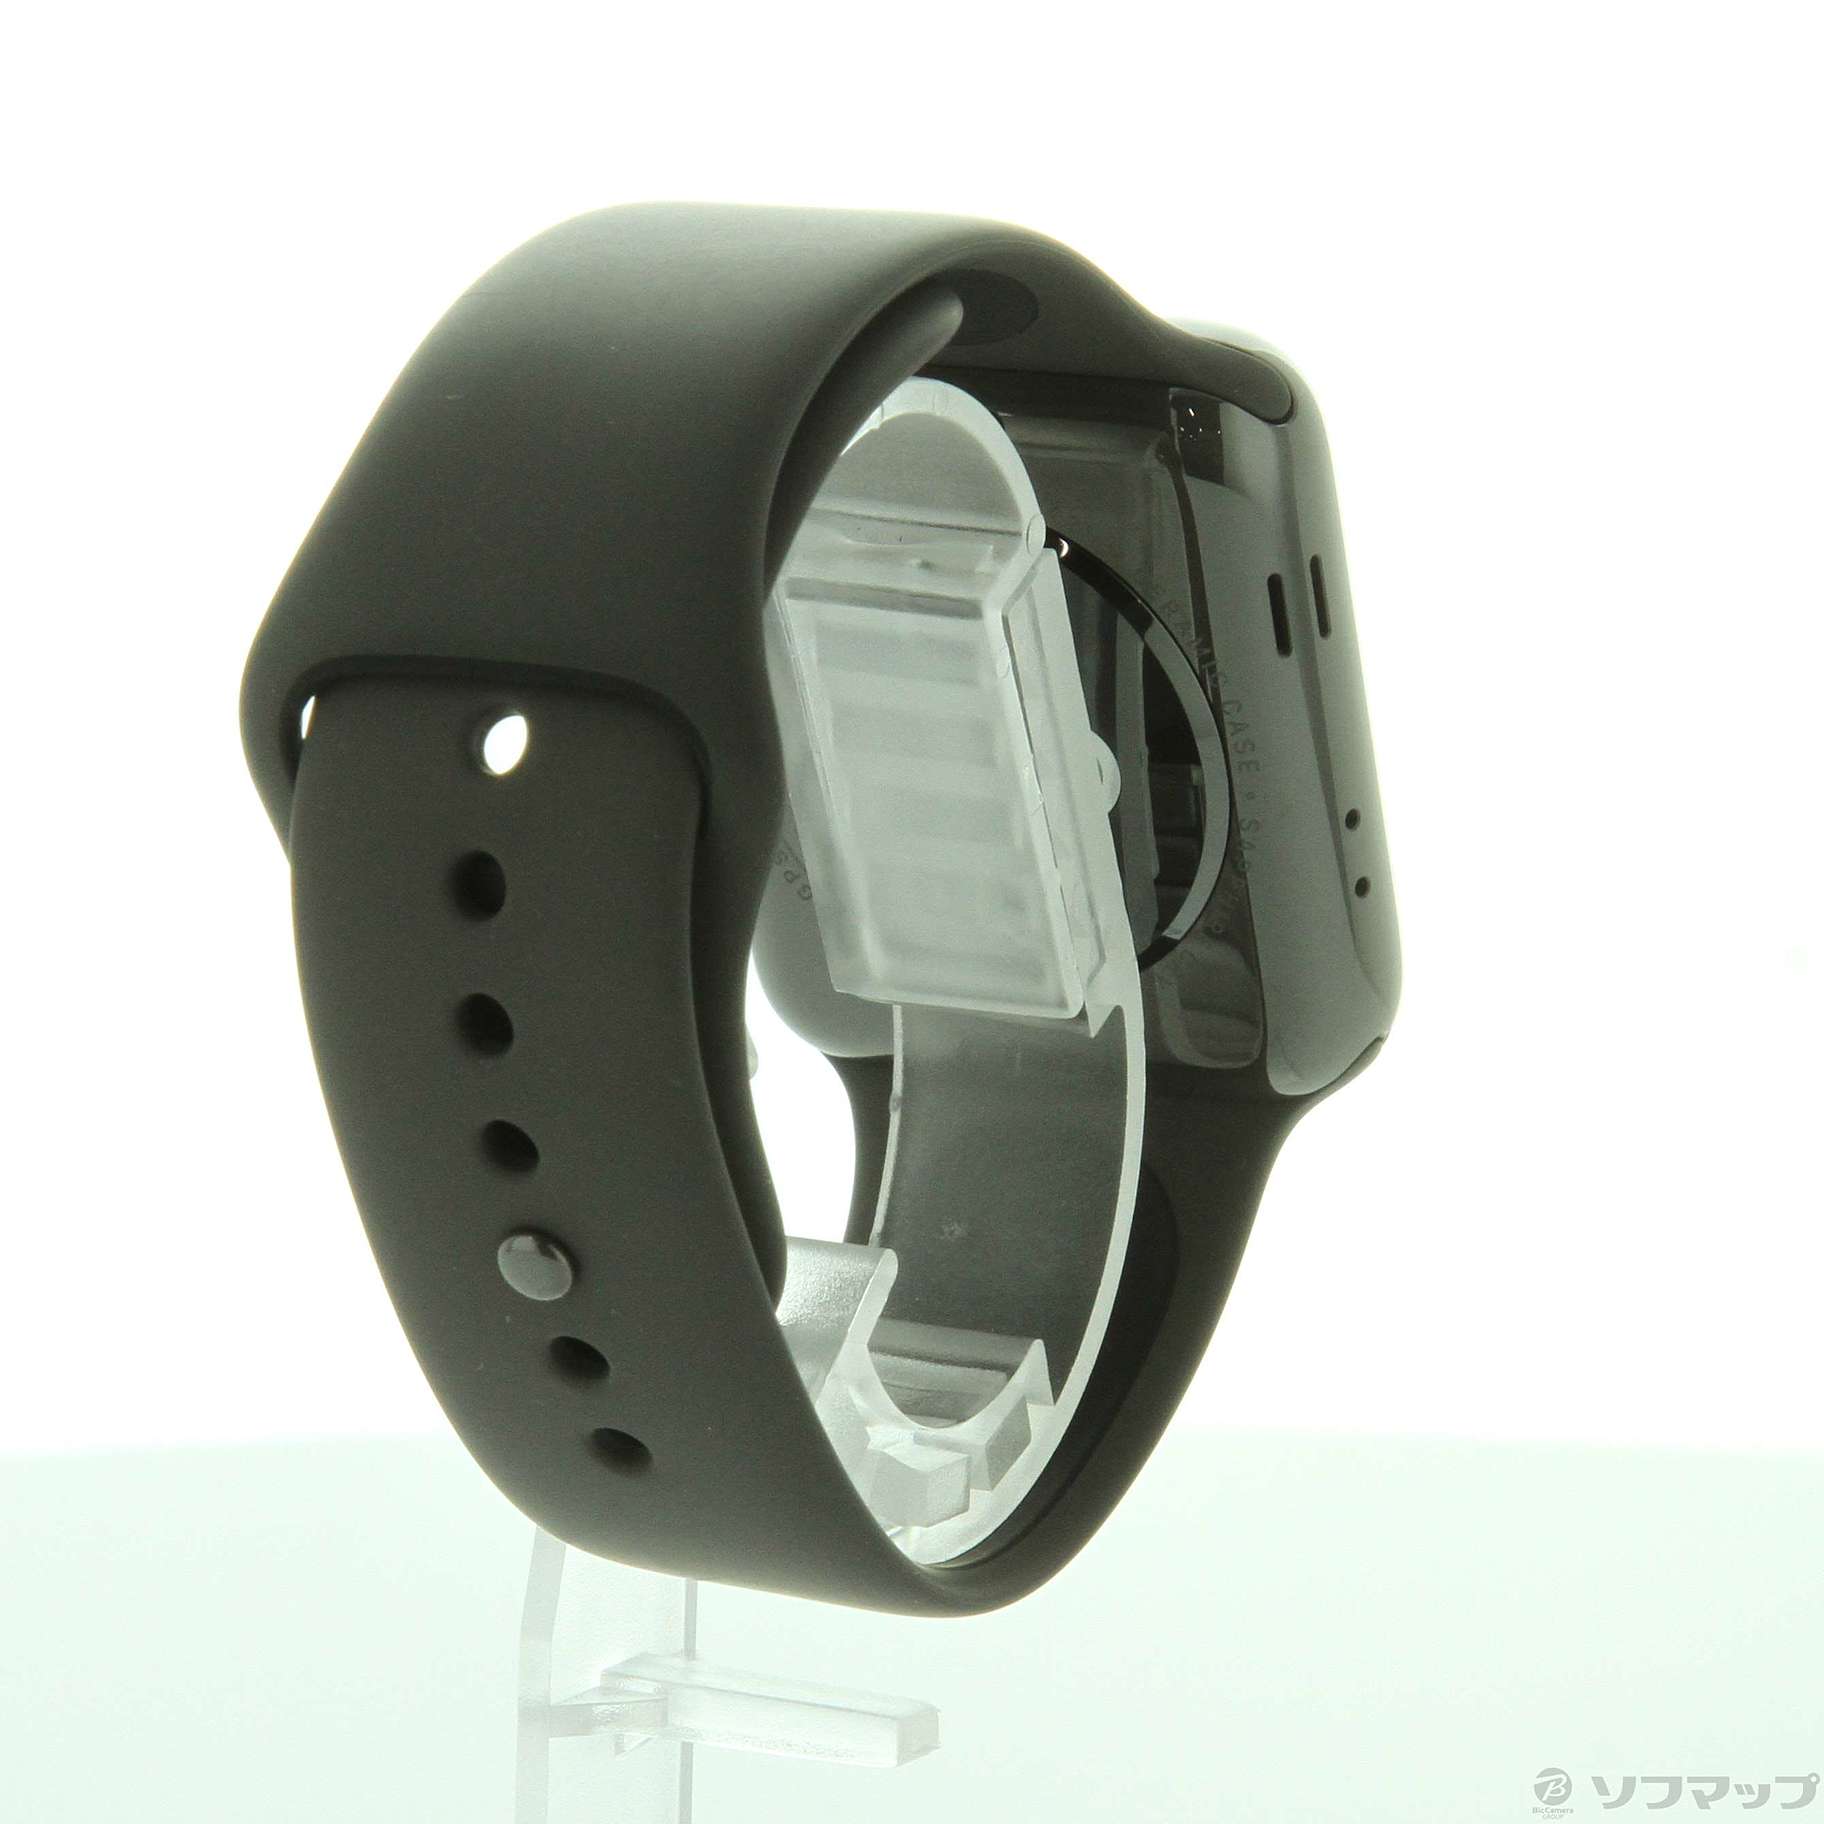 中古】Apple Watch Series 3 GPS + Cellular 42mm グレイセラミック 